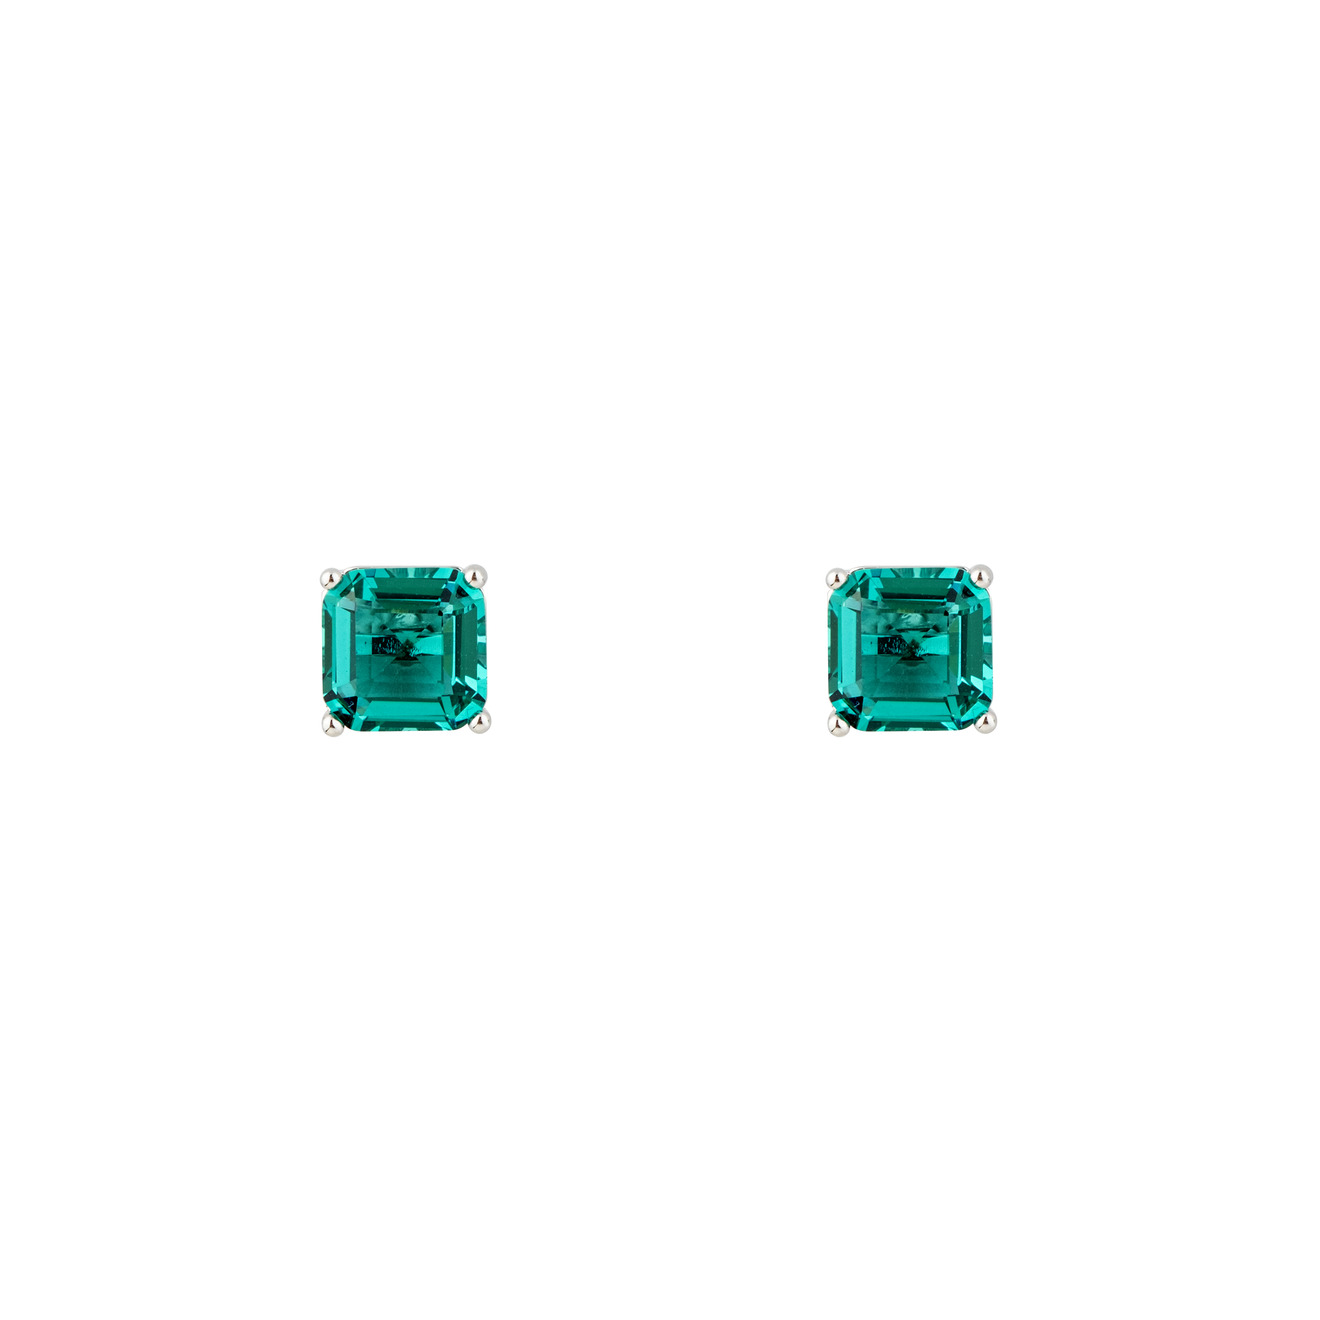 Herald Percy Серебристые серьги с зелеными кристаллами herald percy серебристые серьги звезды с кристаллами